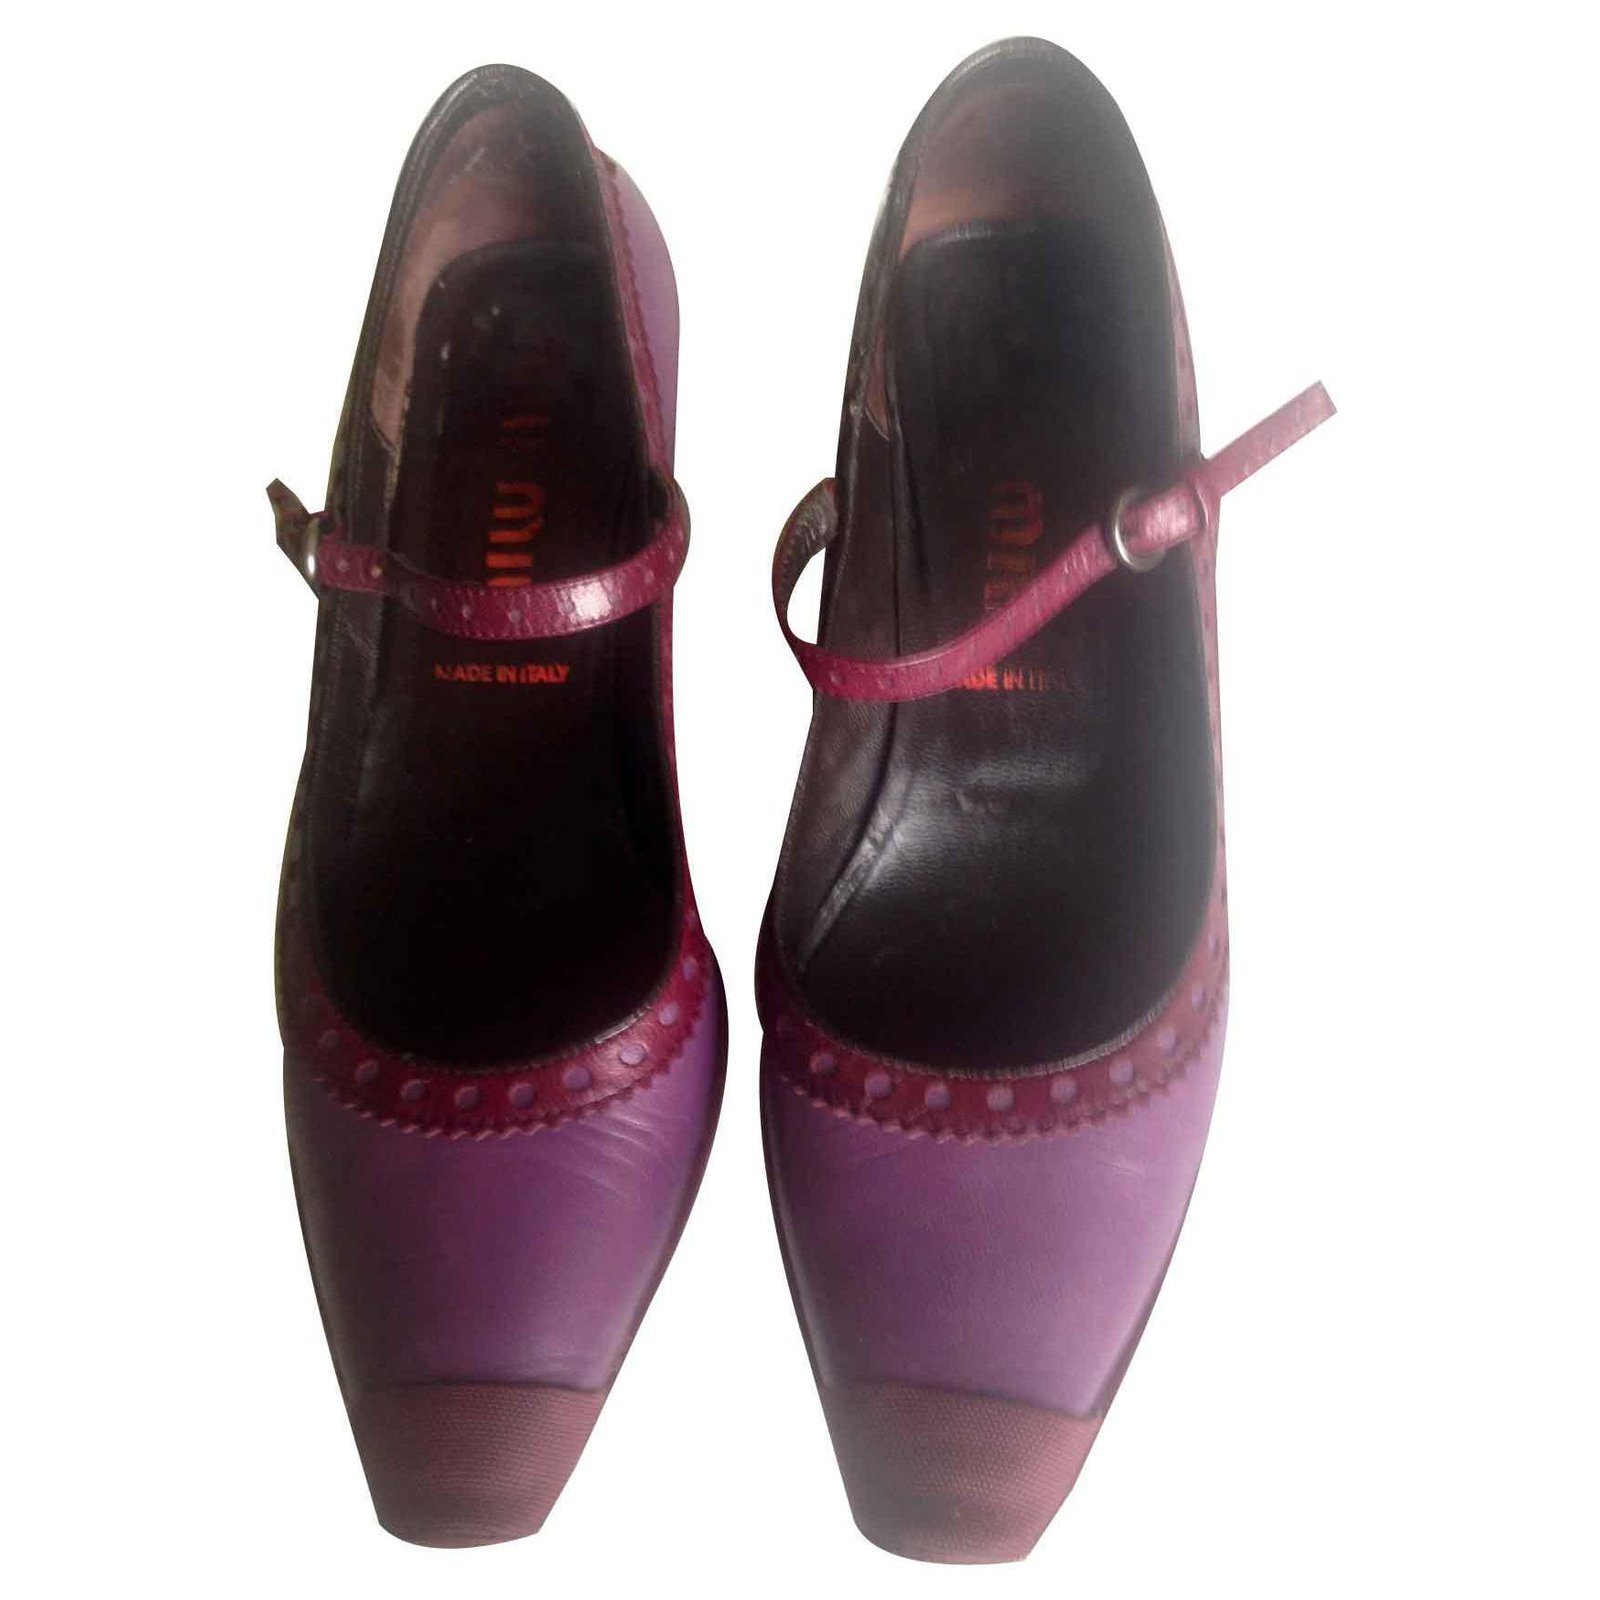 purple vintage shoes